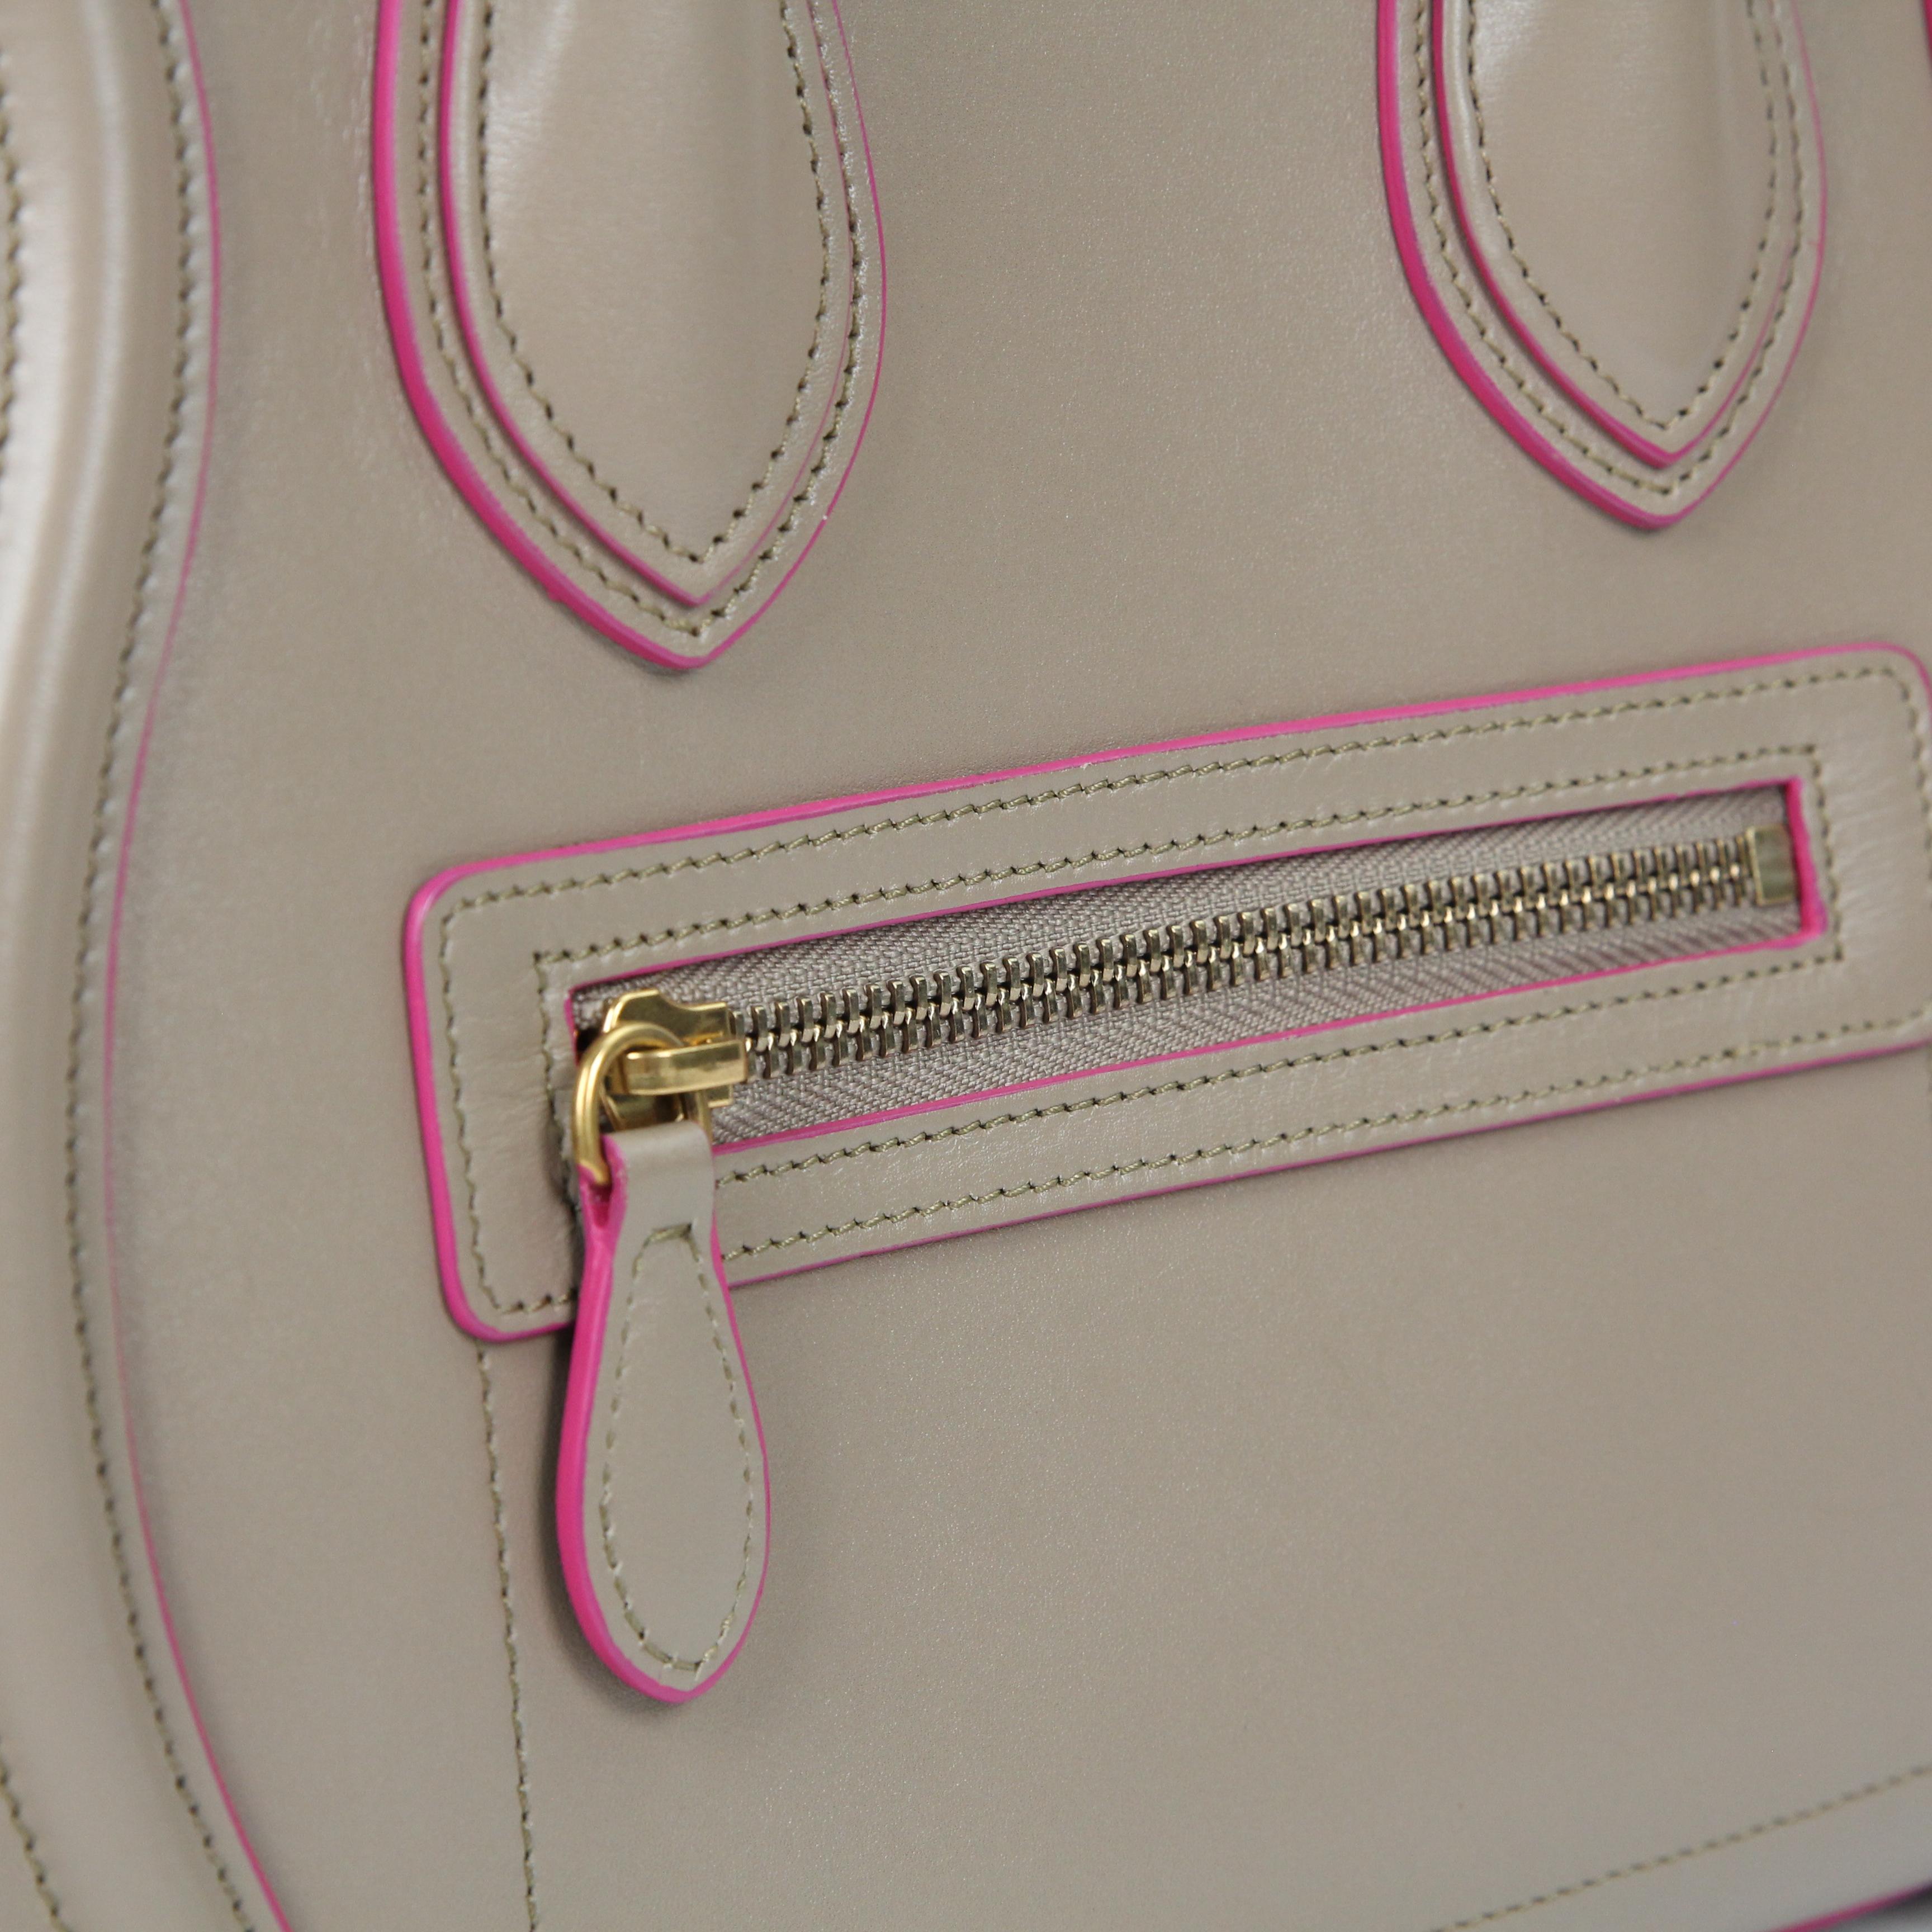 Celine Luggage leather handbag For Sale 16